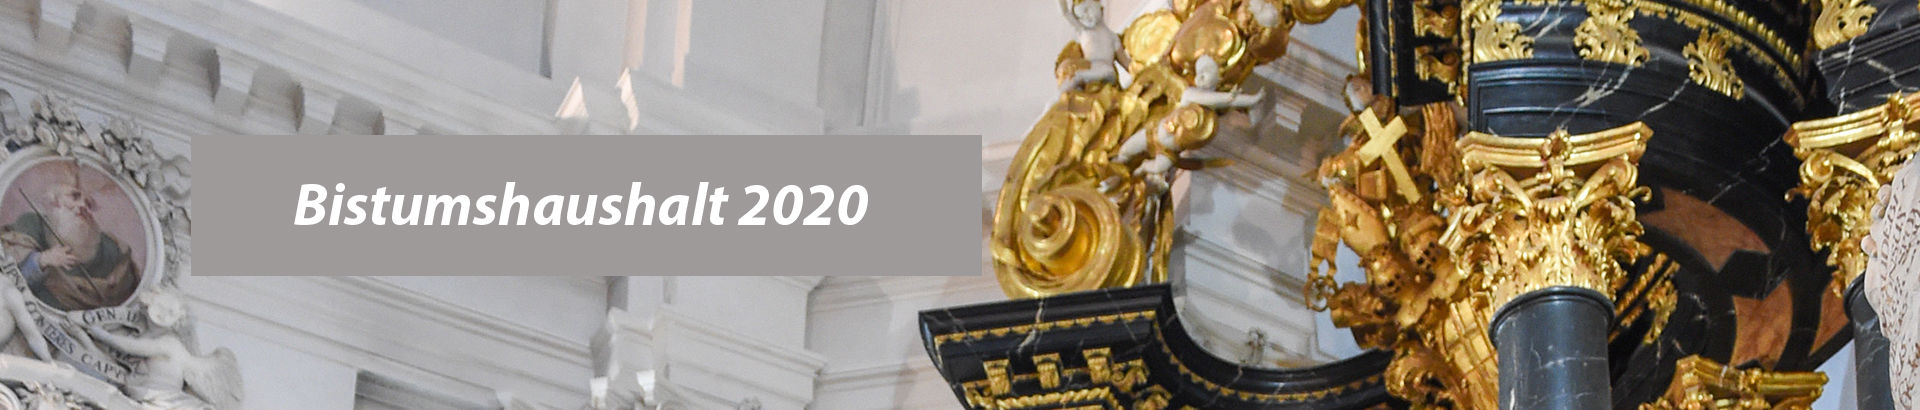 Bistumshaushalt 2020